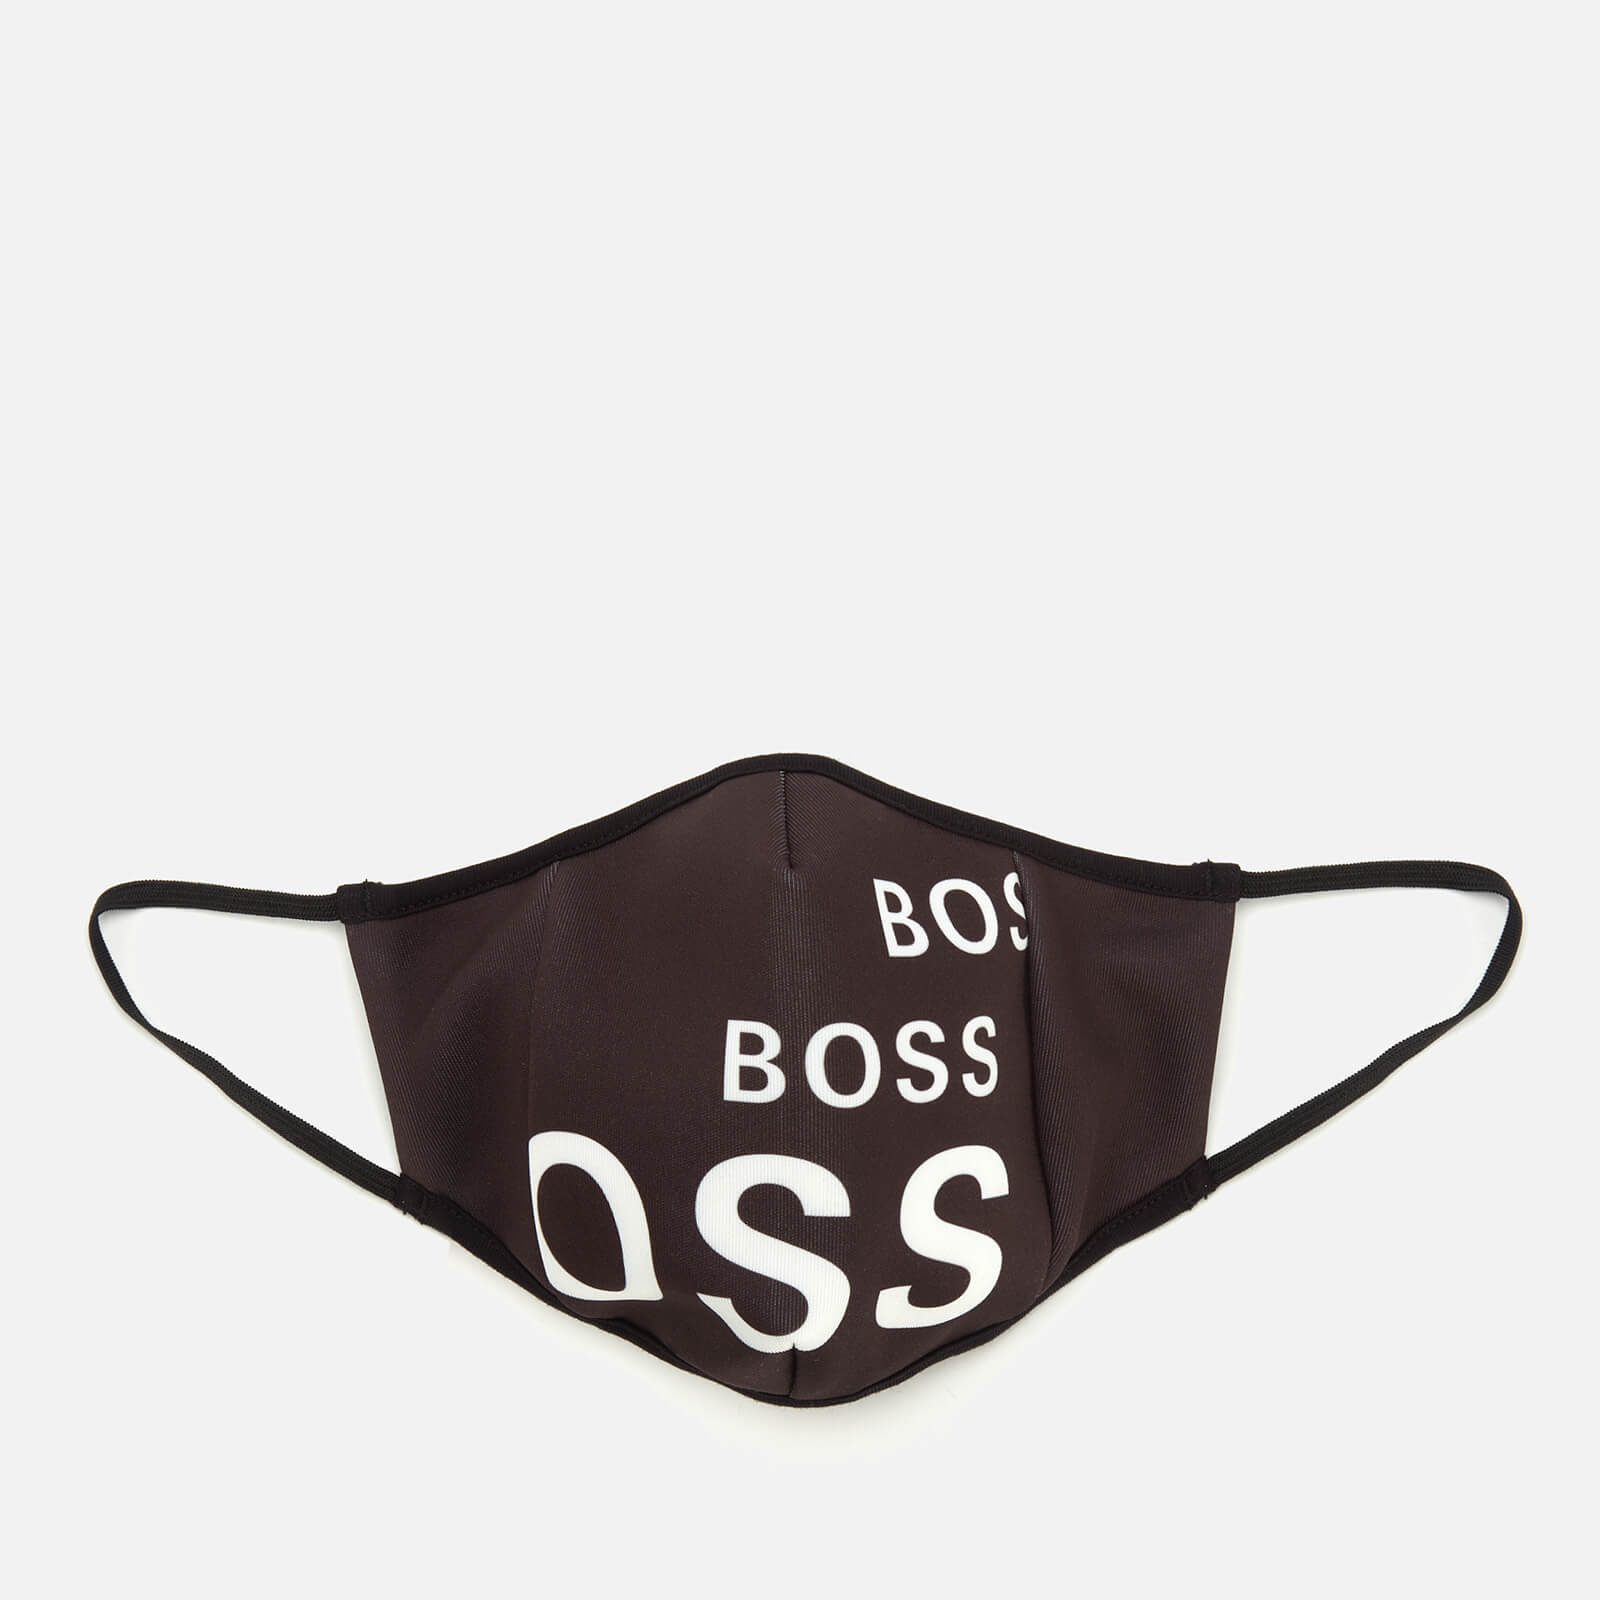 BOSS Hugo Boss Men's Logo Print Face Mask - Black - M